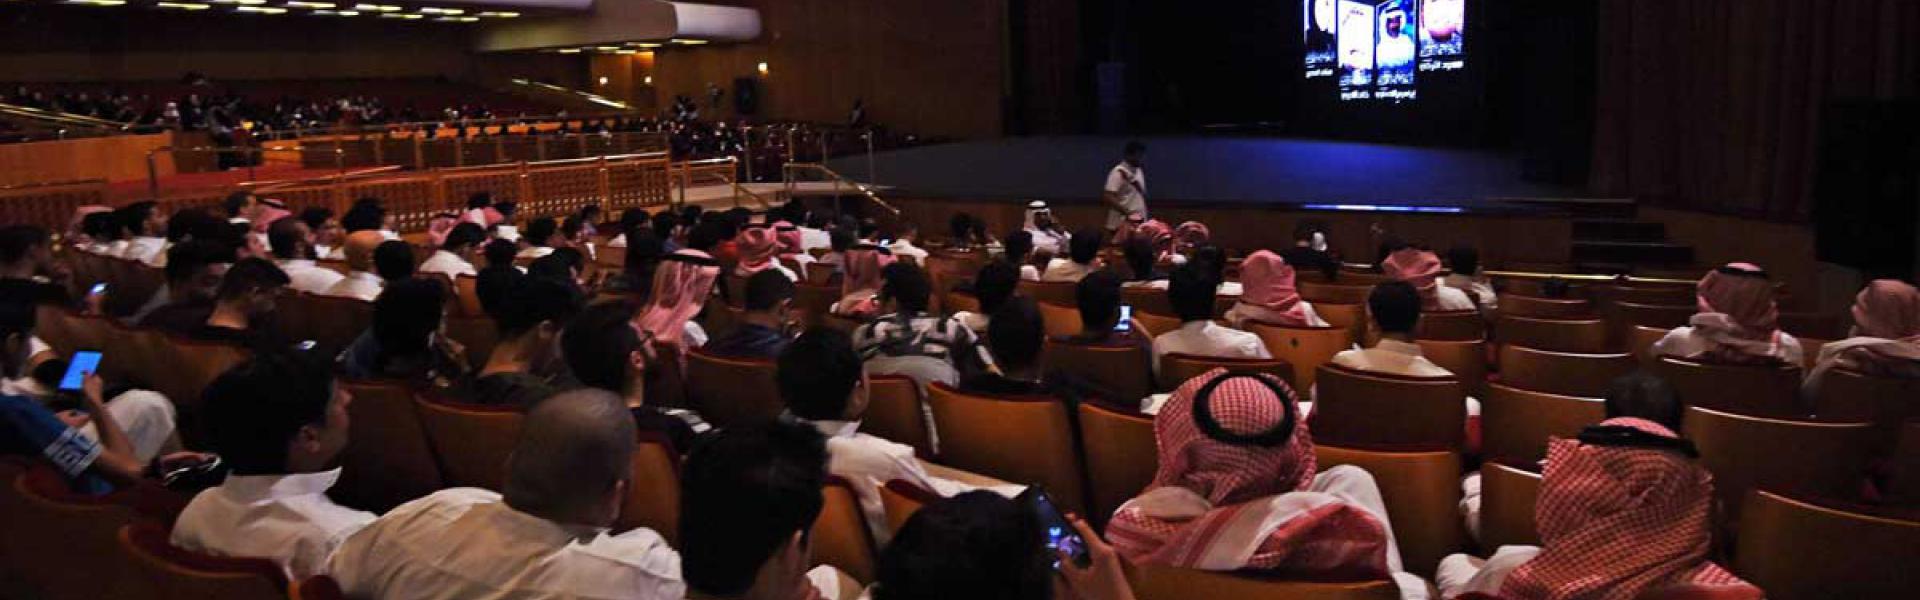 السينما السعودية